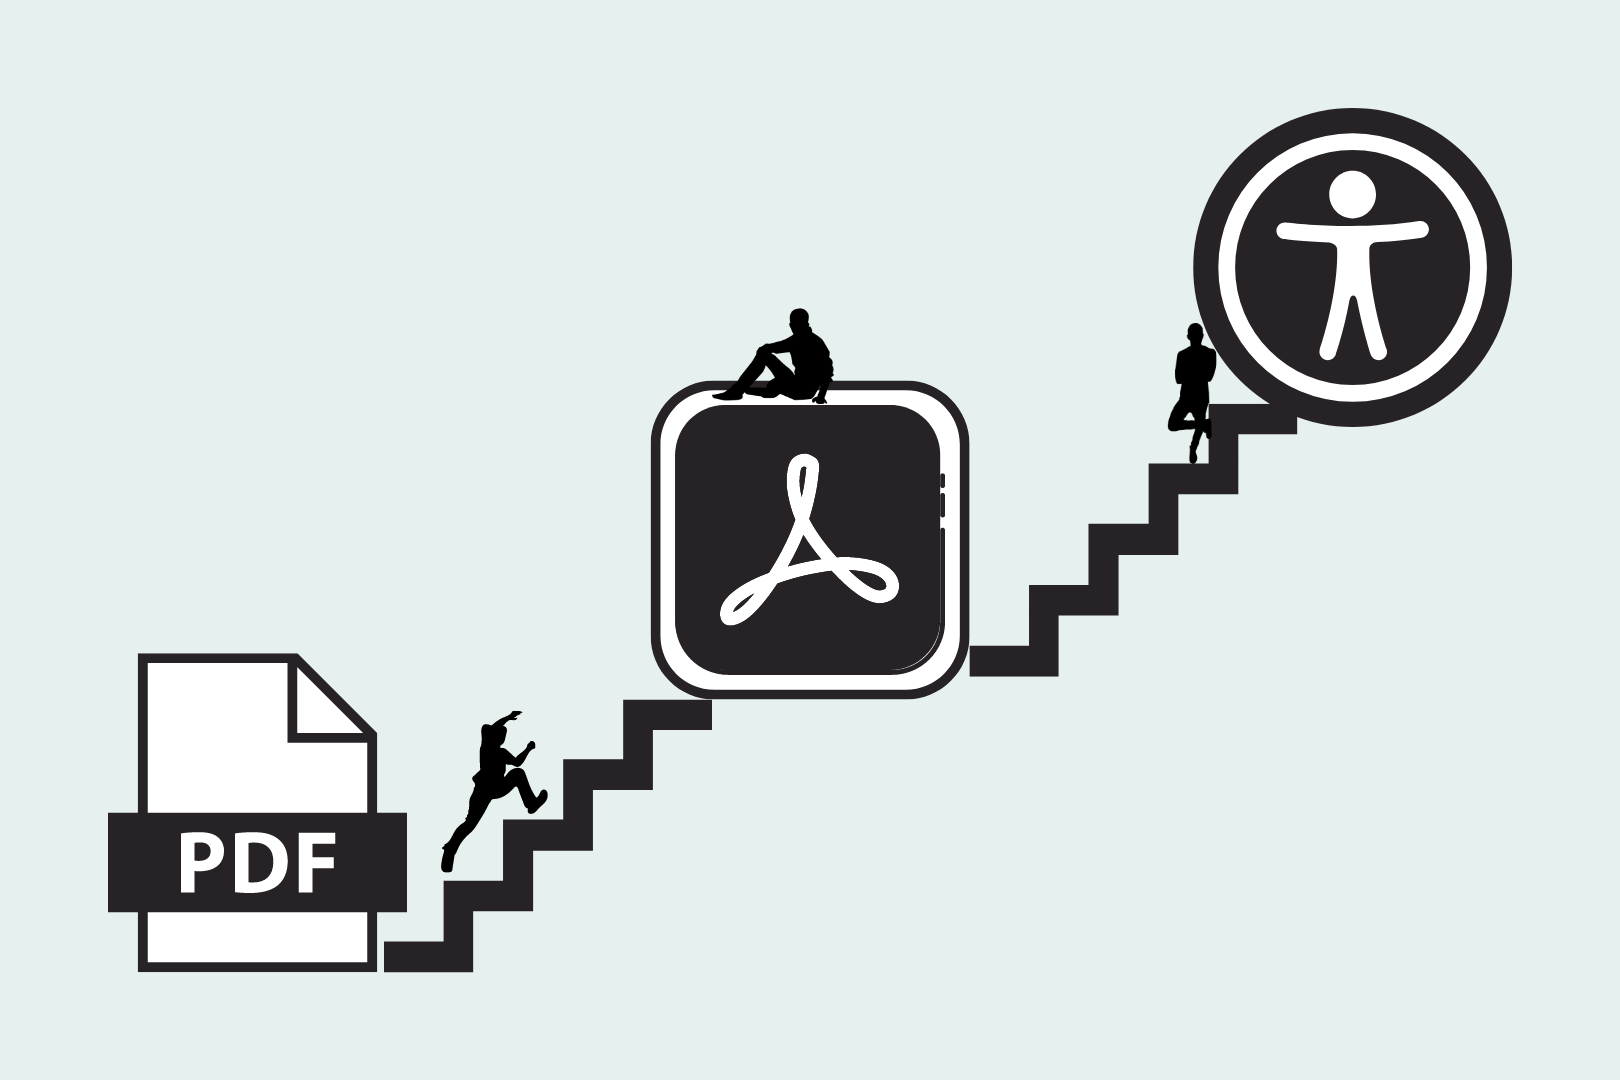 Grafiikkakuva portaista joiden alapäässä on PDF-tiedoston logo, keskellä Adobe Acrobatin logo ja ylhäällä saavutettavuuslogo. Portailla on kolme eri asennossa olevaa ihmisen siluettia menossa kohti saavutettavuuden logoa.